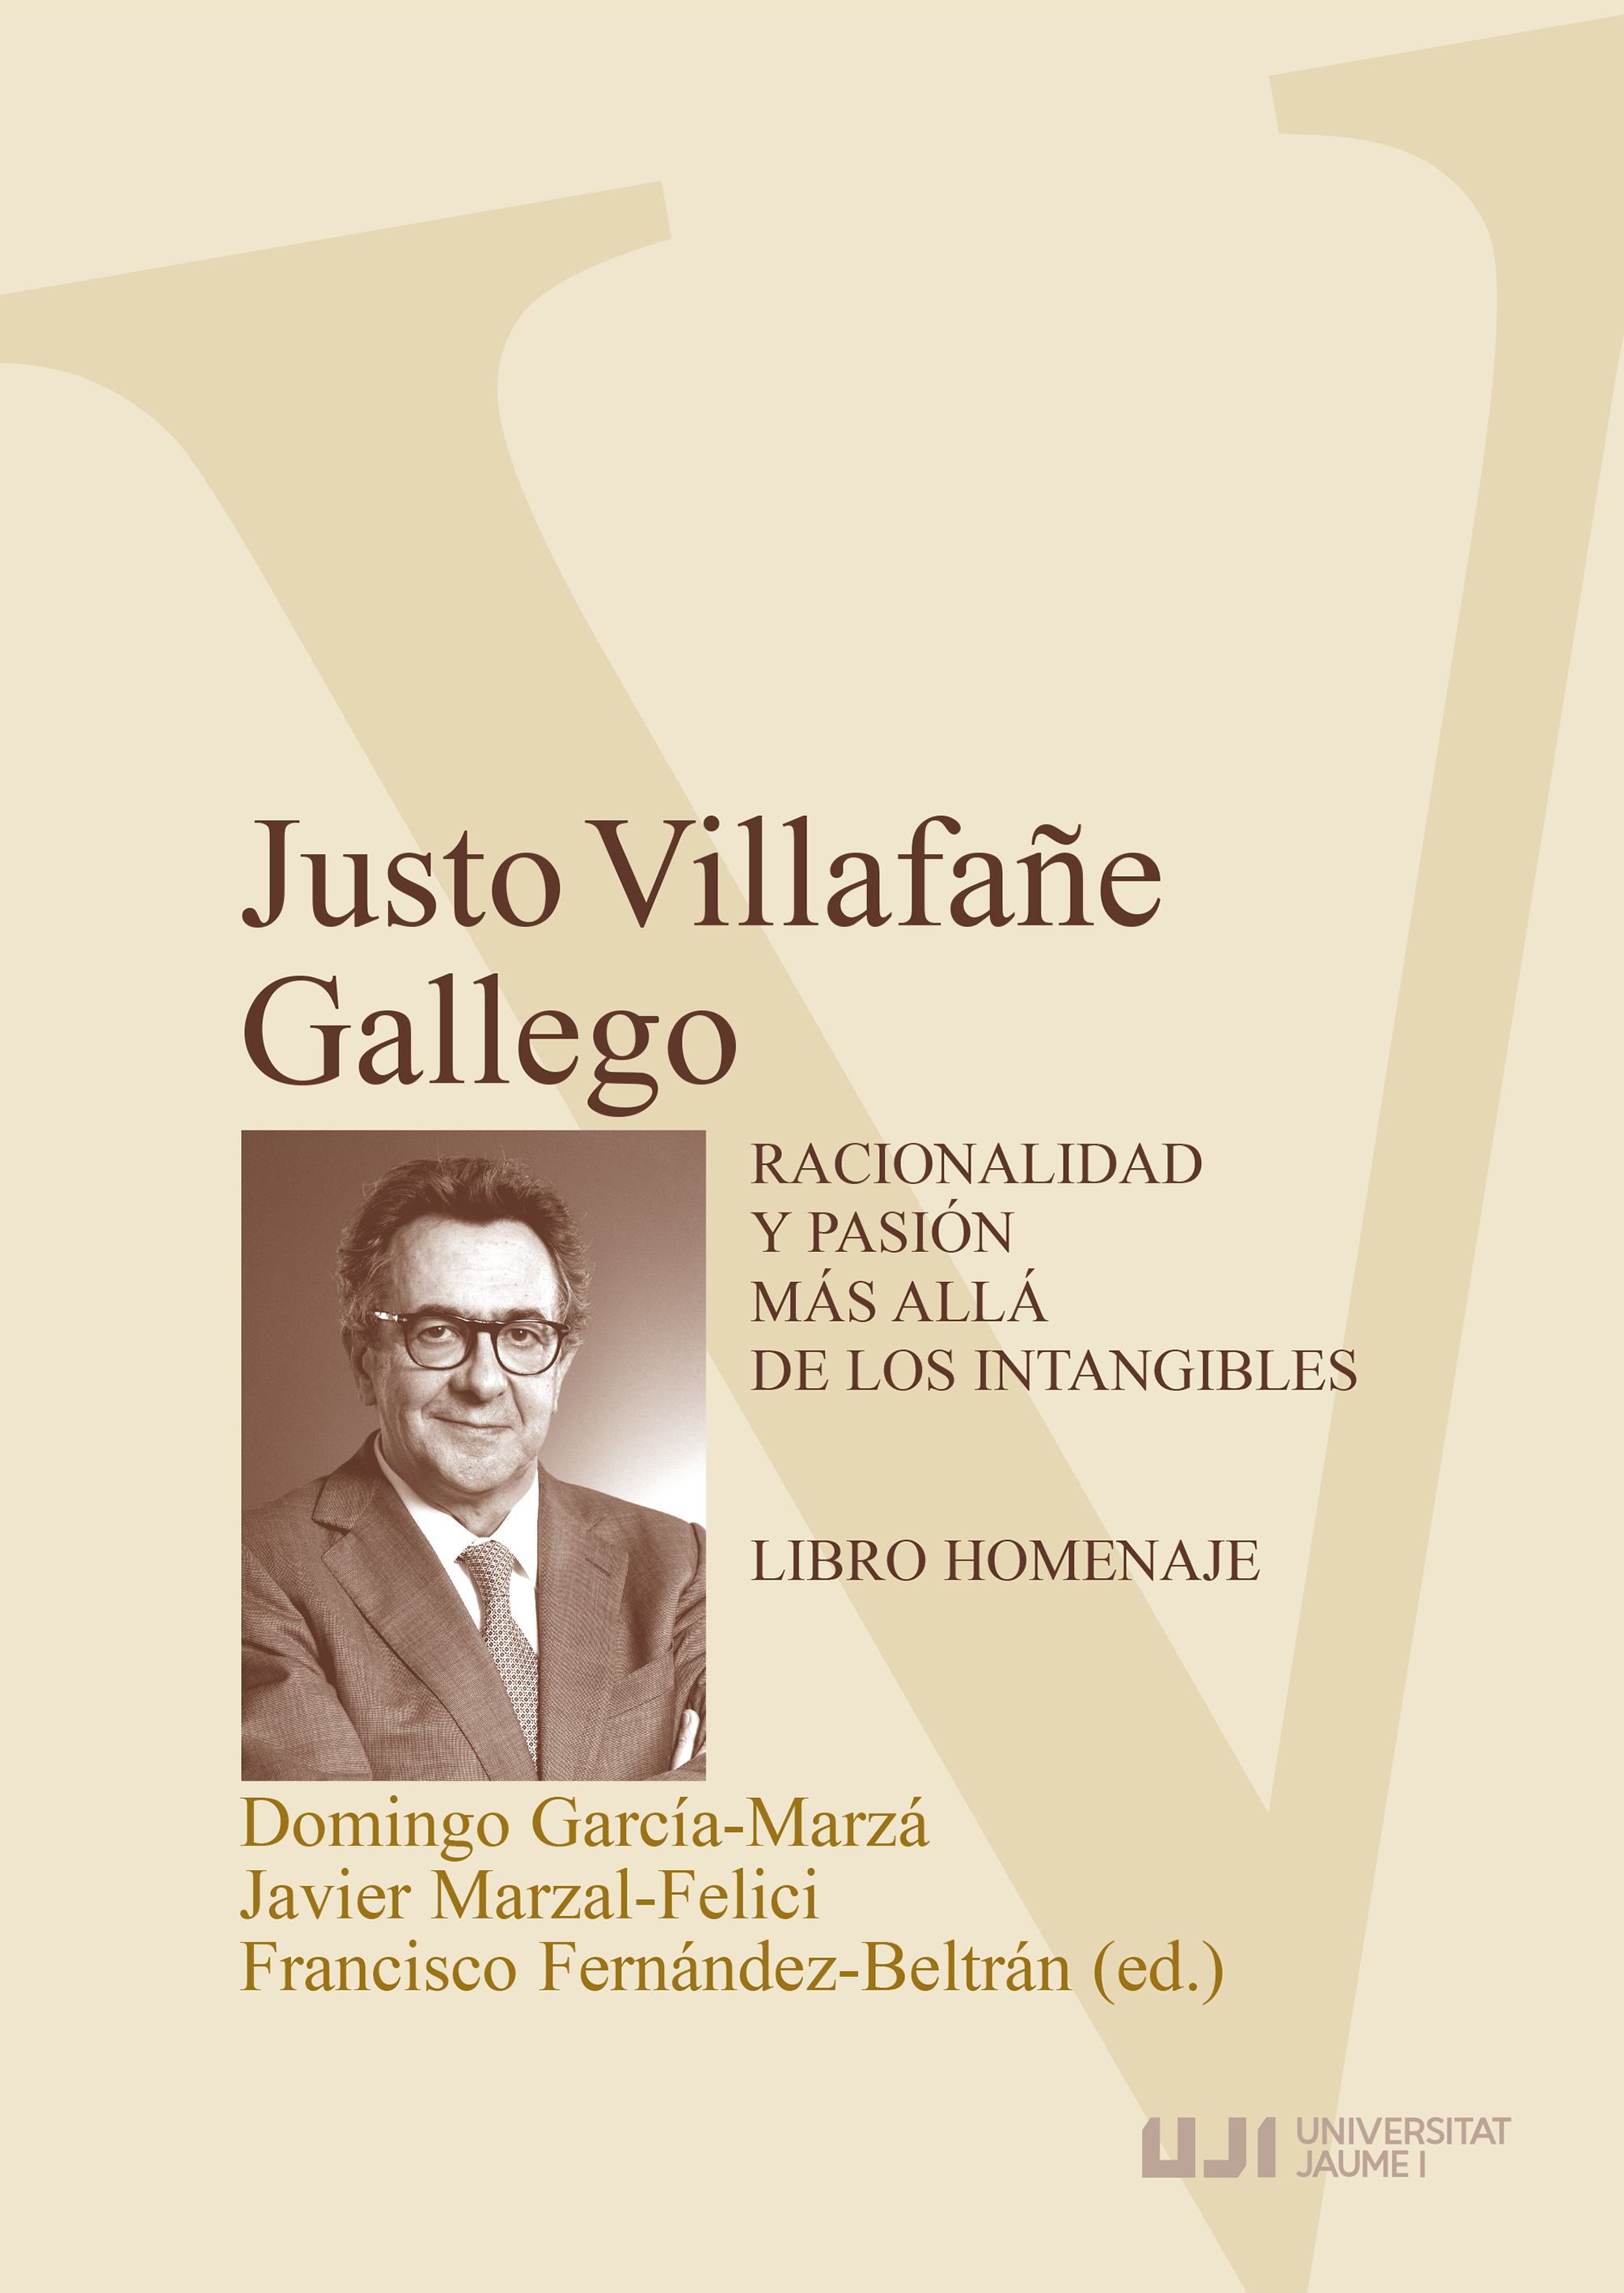 Justo VillafaÃ±e Gallego. Racionalidad y pasiÃ³n mÃ¡s allÃ¡ de los intangibles